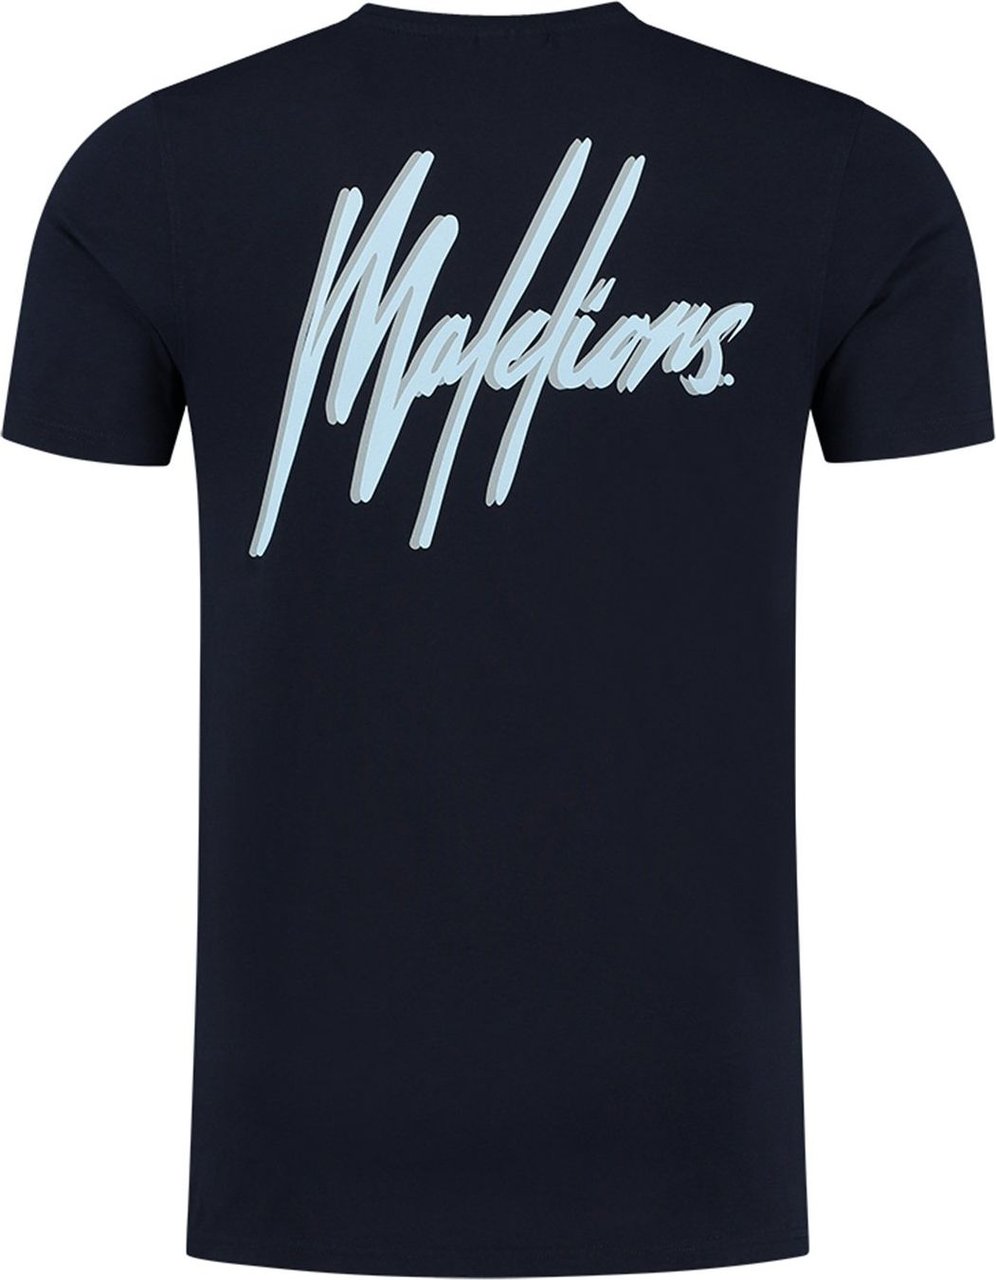 Malelions Jerra T-Shirt - Navy/Light Blue Blauw